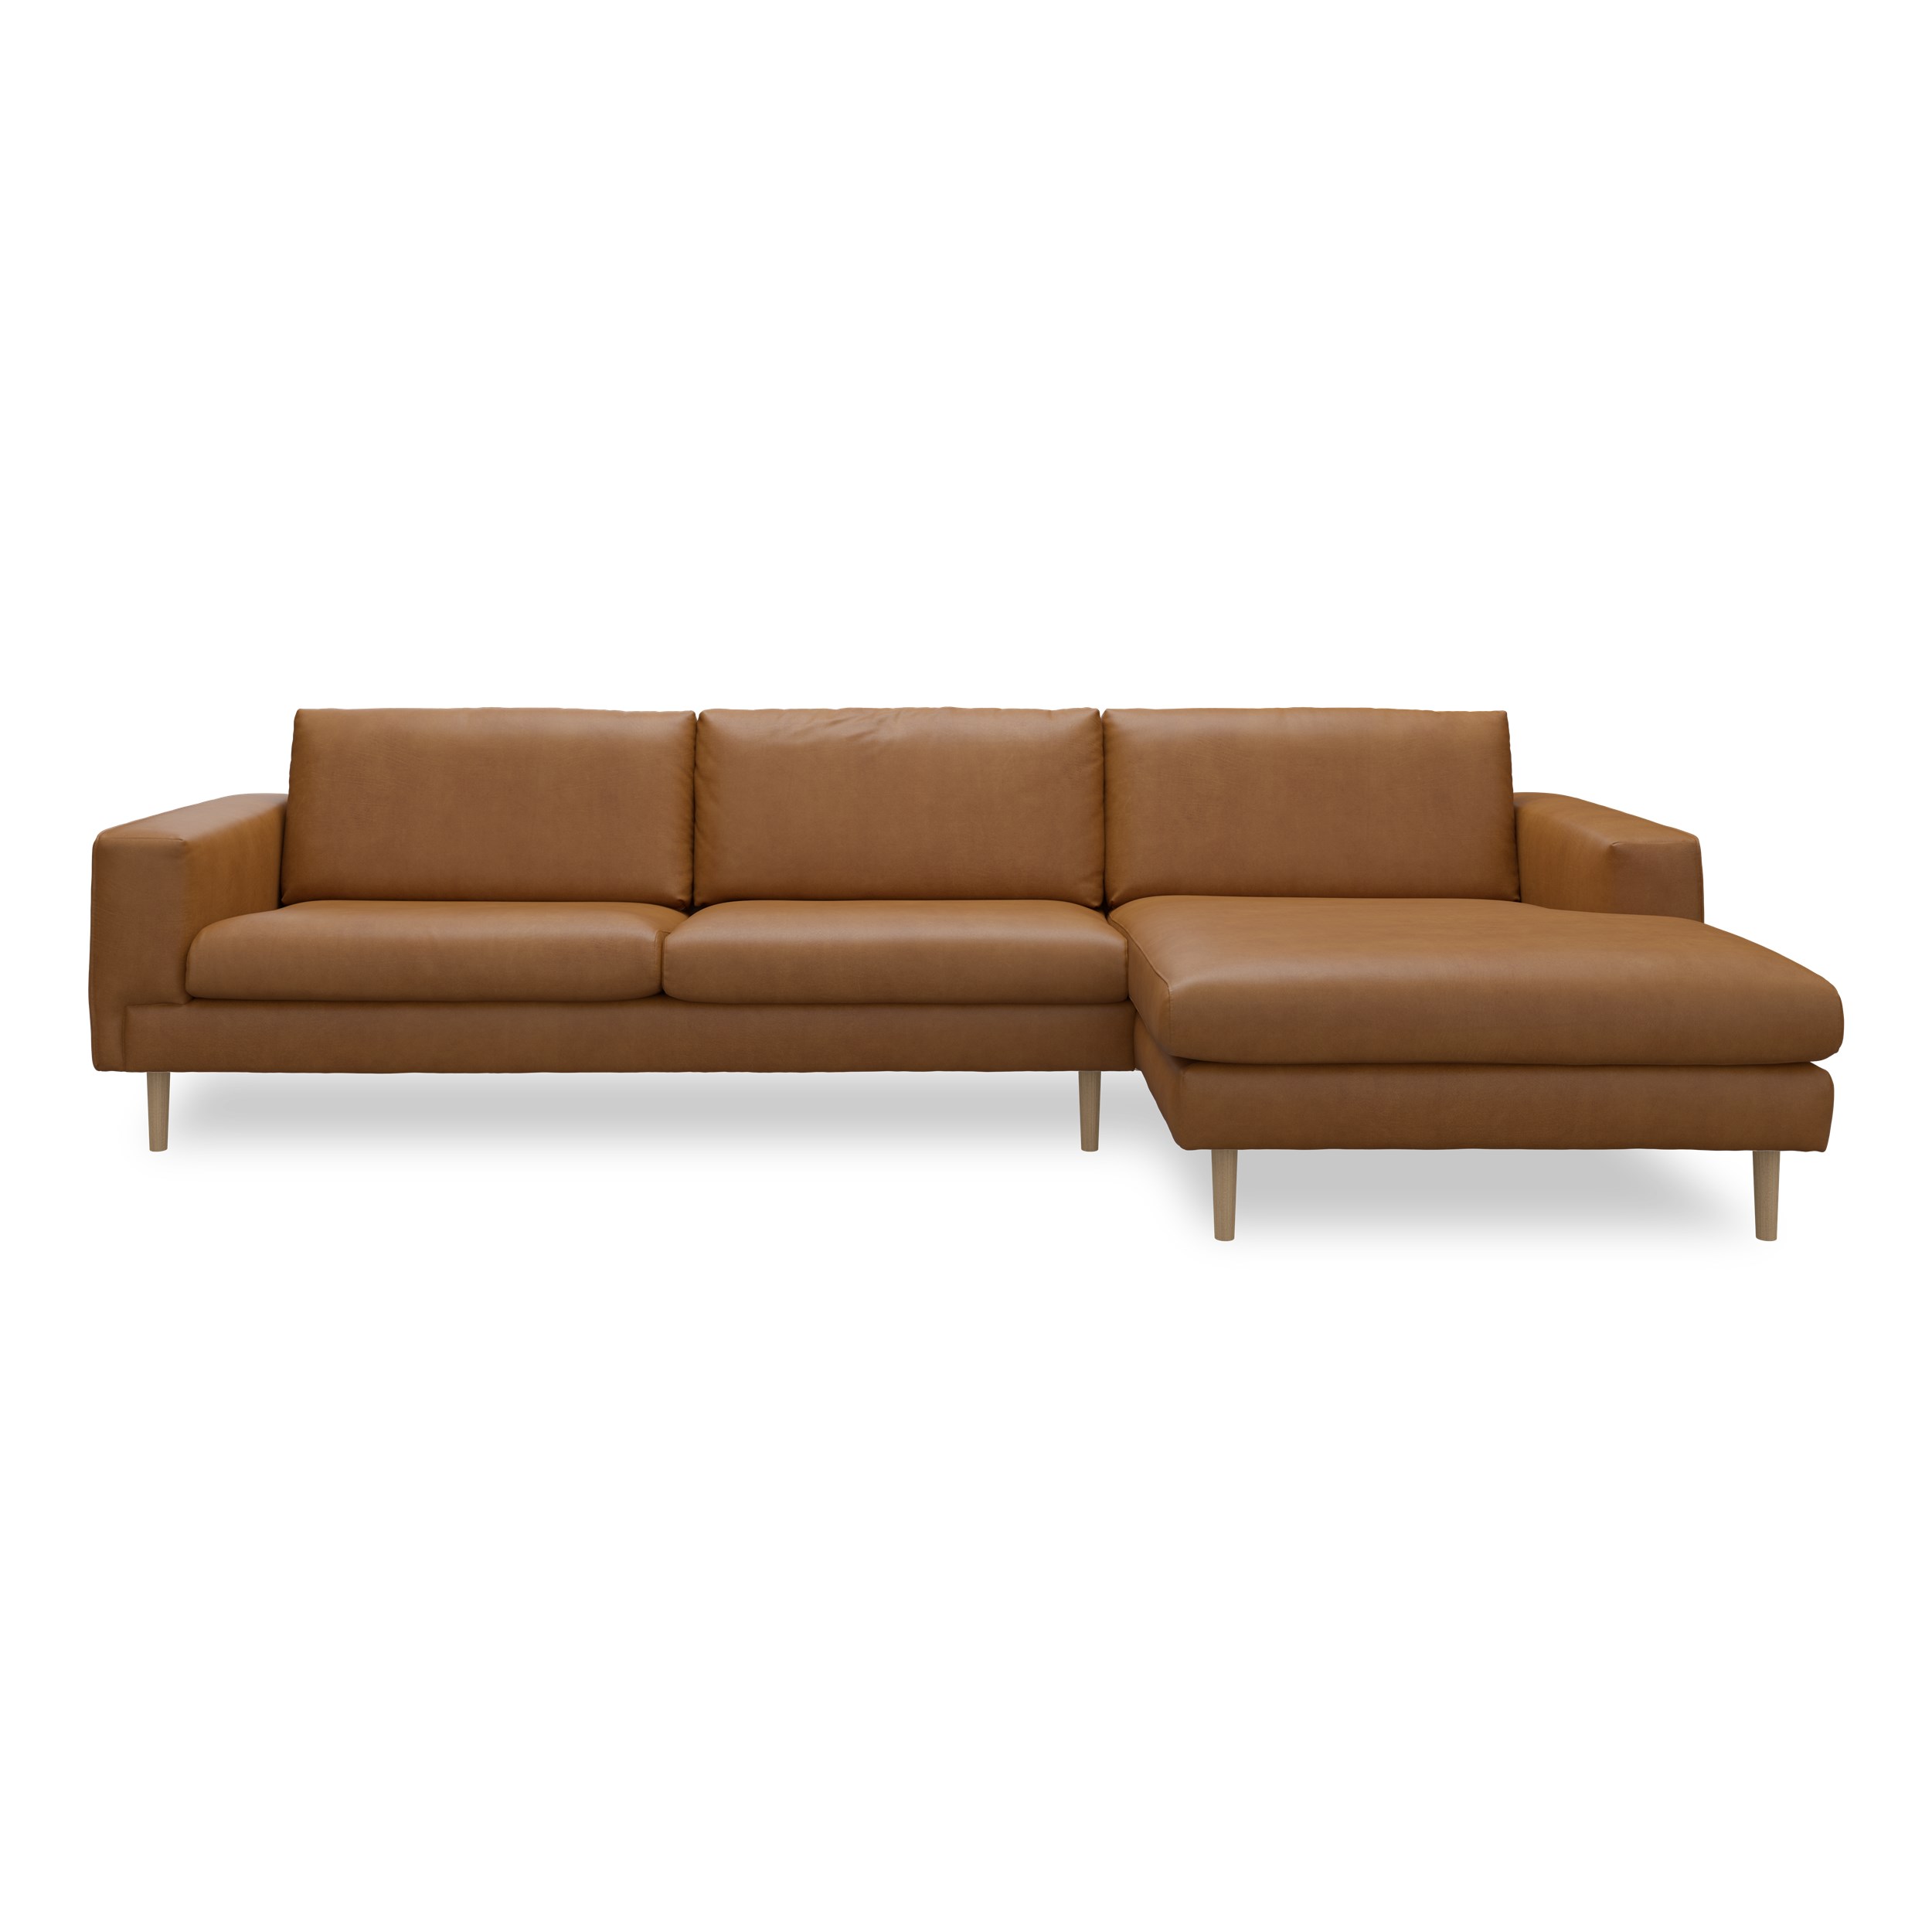 Nyland højrevendt sofa med chaiselong - Kentucky 9 cognac bonded læder, Ben no. 141 i lakeret massiv eg og S: Koldskum R:Koldskum med fiberfyld